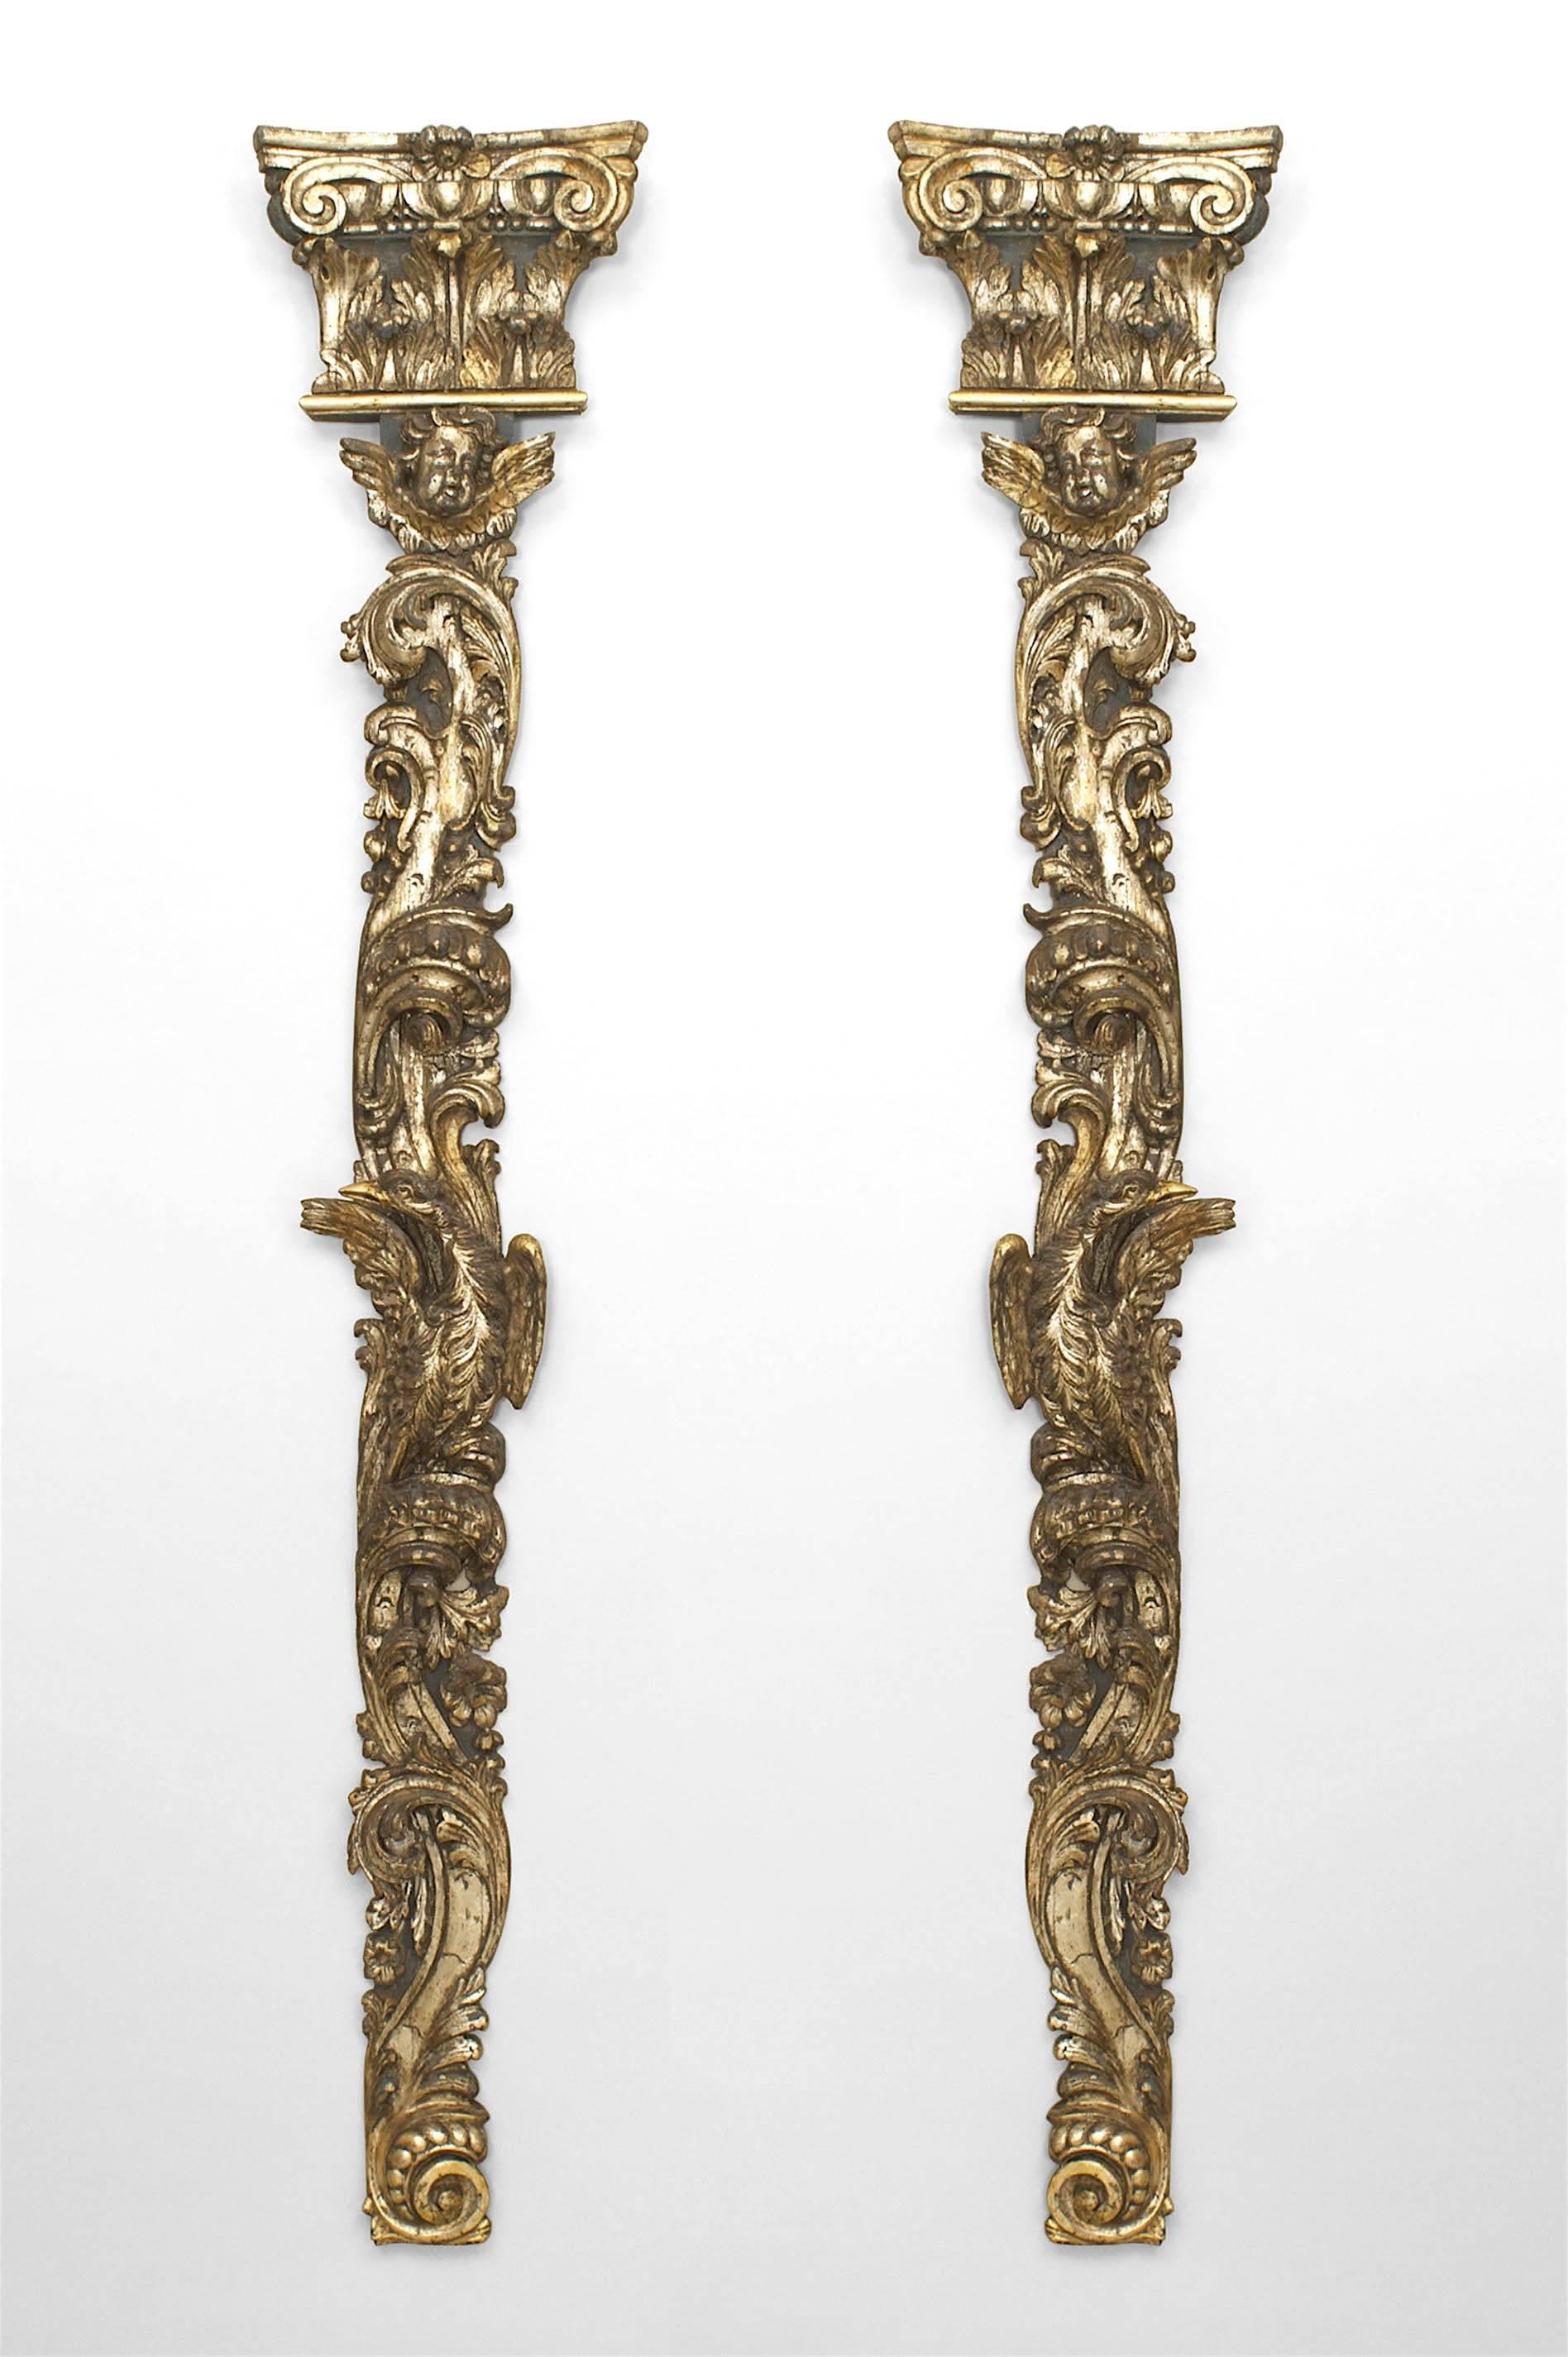 Paar italienische Rokoko-Wandtafeln (Mitte 18. Jh.) mit geschnitzten und vergoldeten Silberpilastern mit Vogel- und Blumenschnitzereien unter einem ionischen Kapitellgiebel